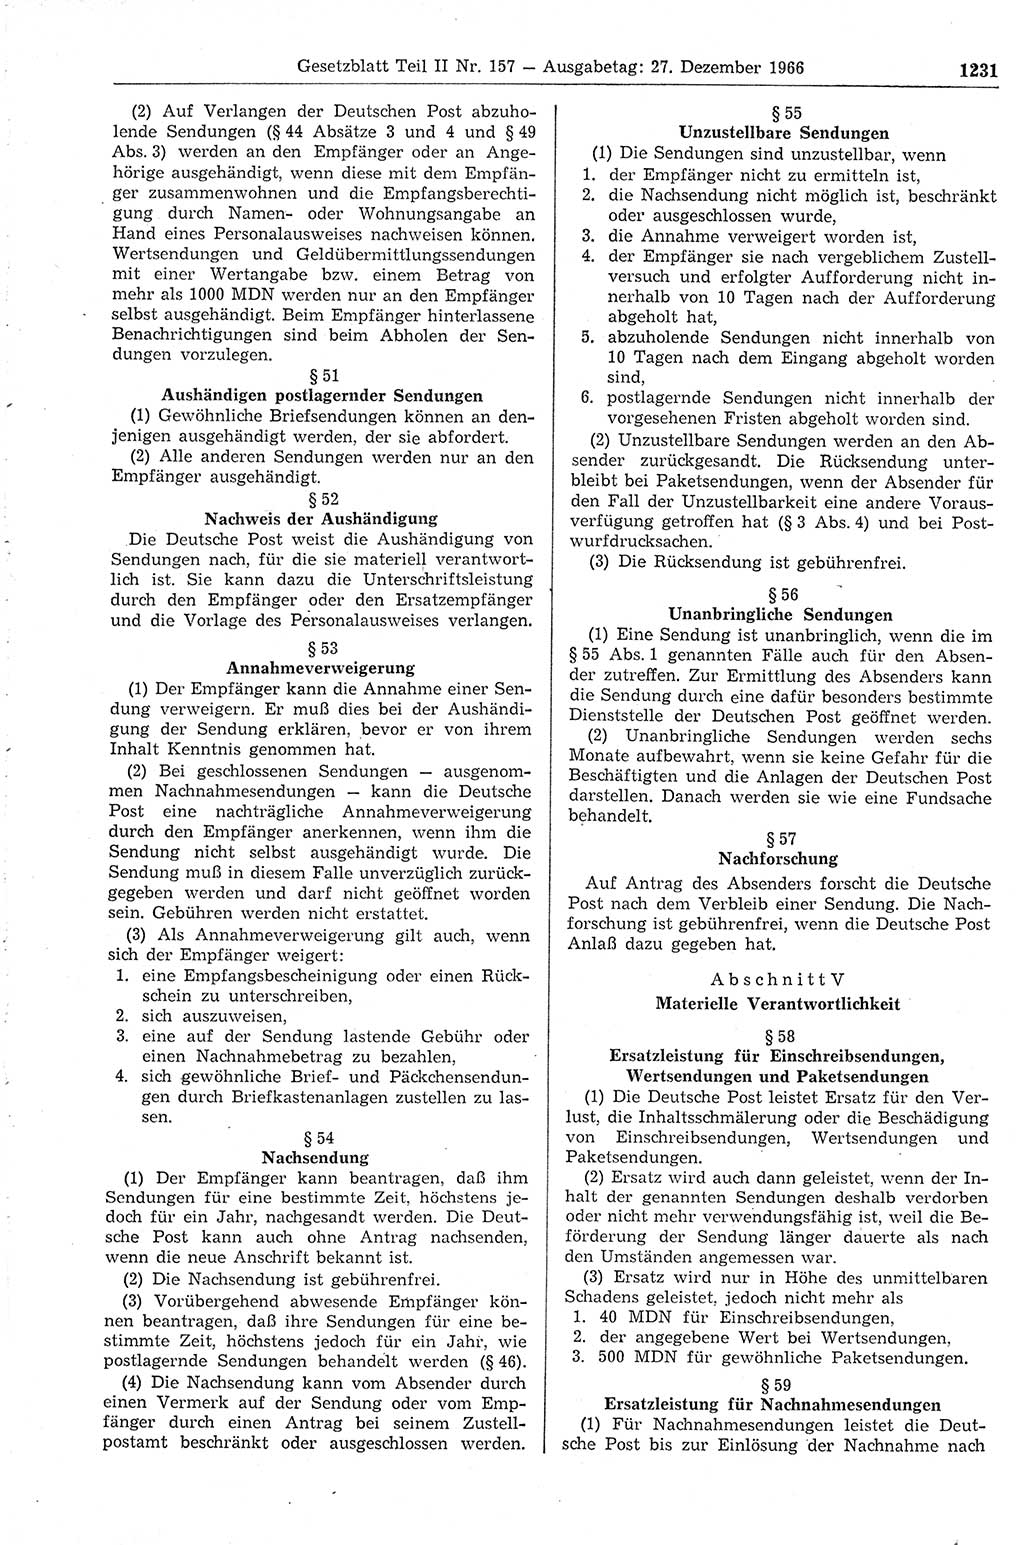 Gesetzblatt (GBl.) der Deutschen Demokratischen Republik (DDR) Teil ⅠⅠ 1966, Seite 1231 (GBl. DDR ⅠⅠ 1966, S. 1231)